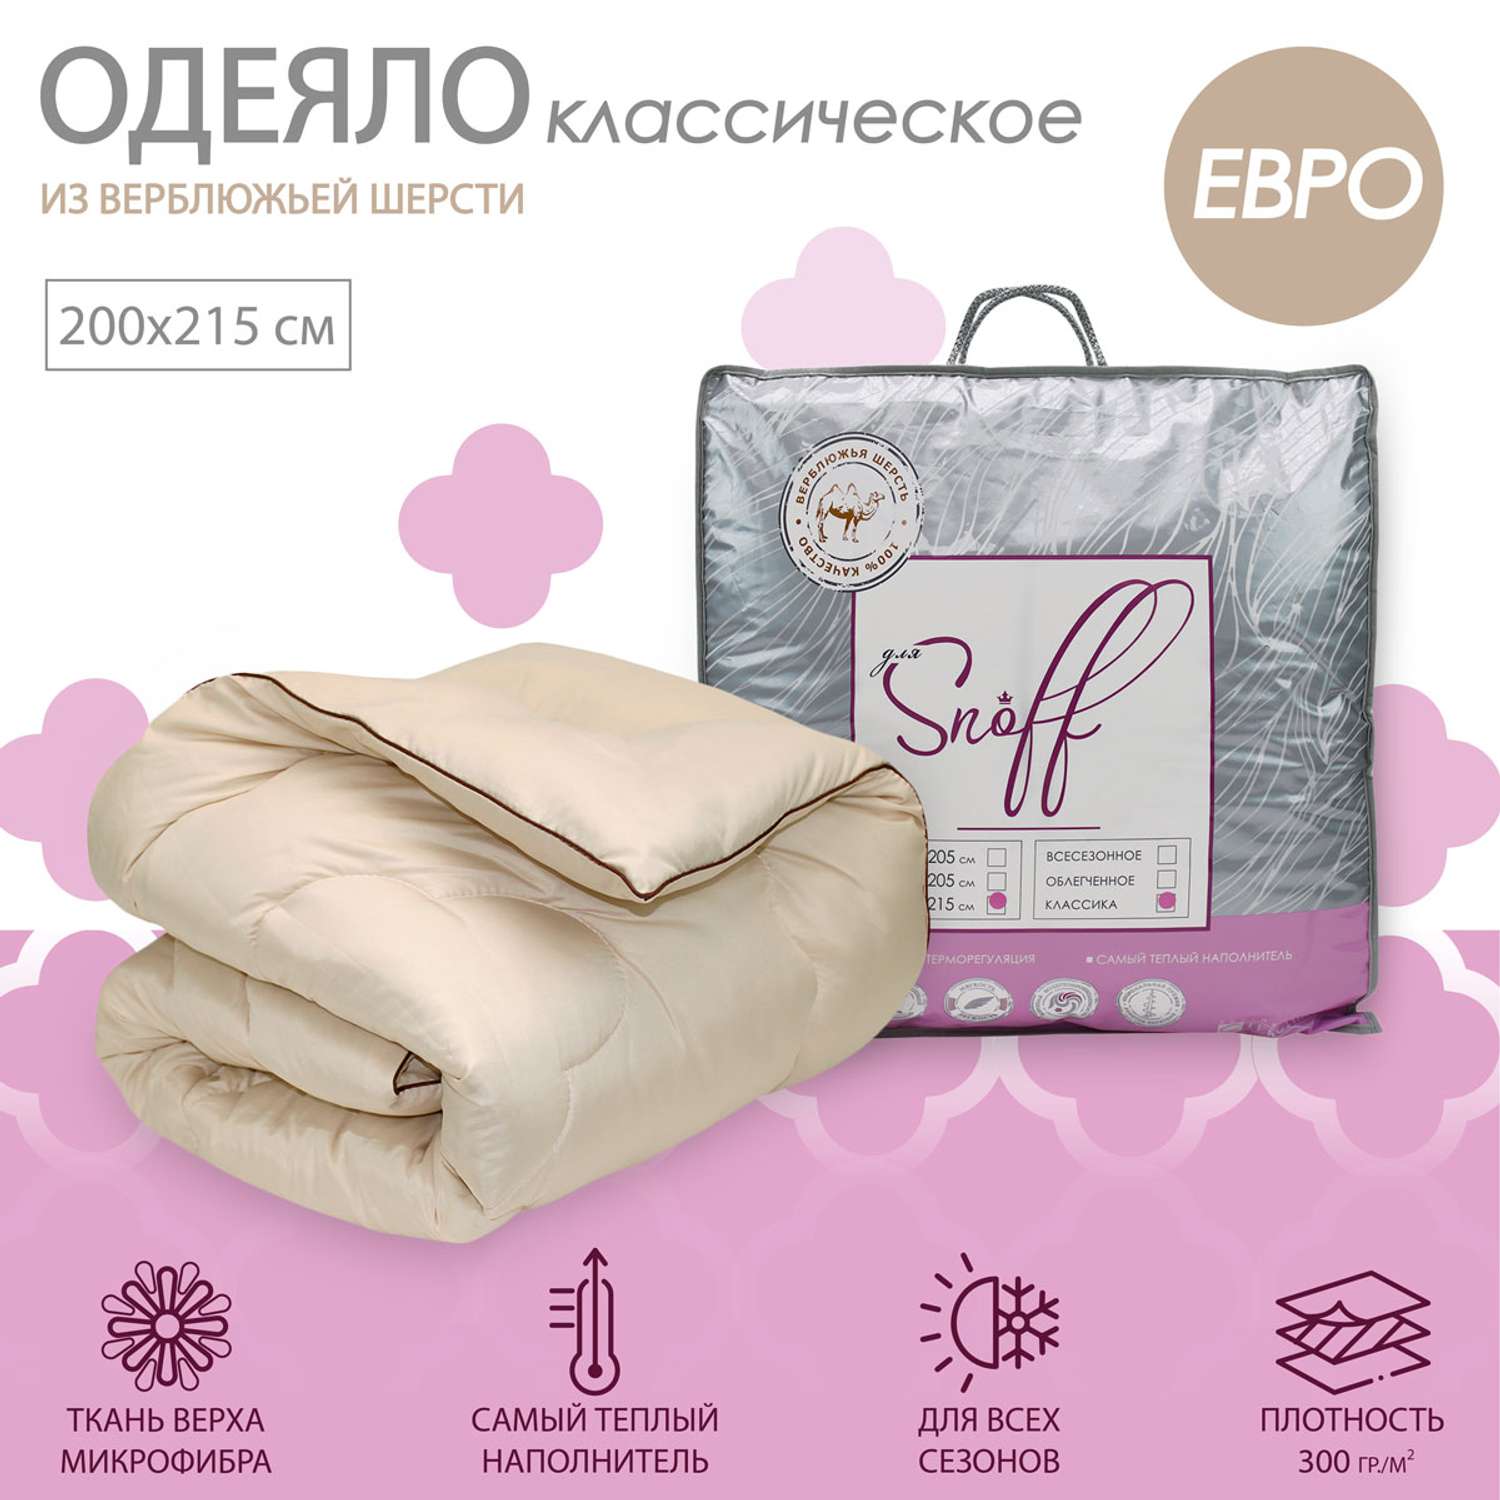 Одеяло для SNOFF евро верблюжья шерсть классическое 200х215 - фото 1